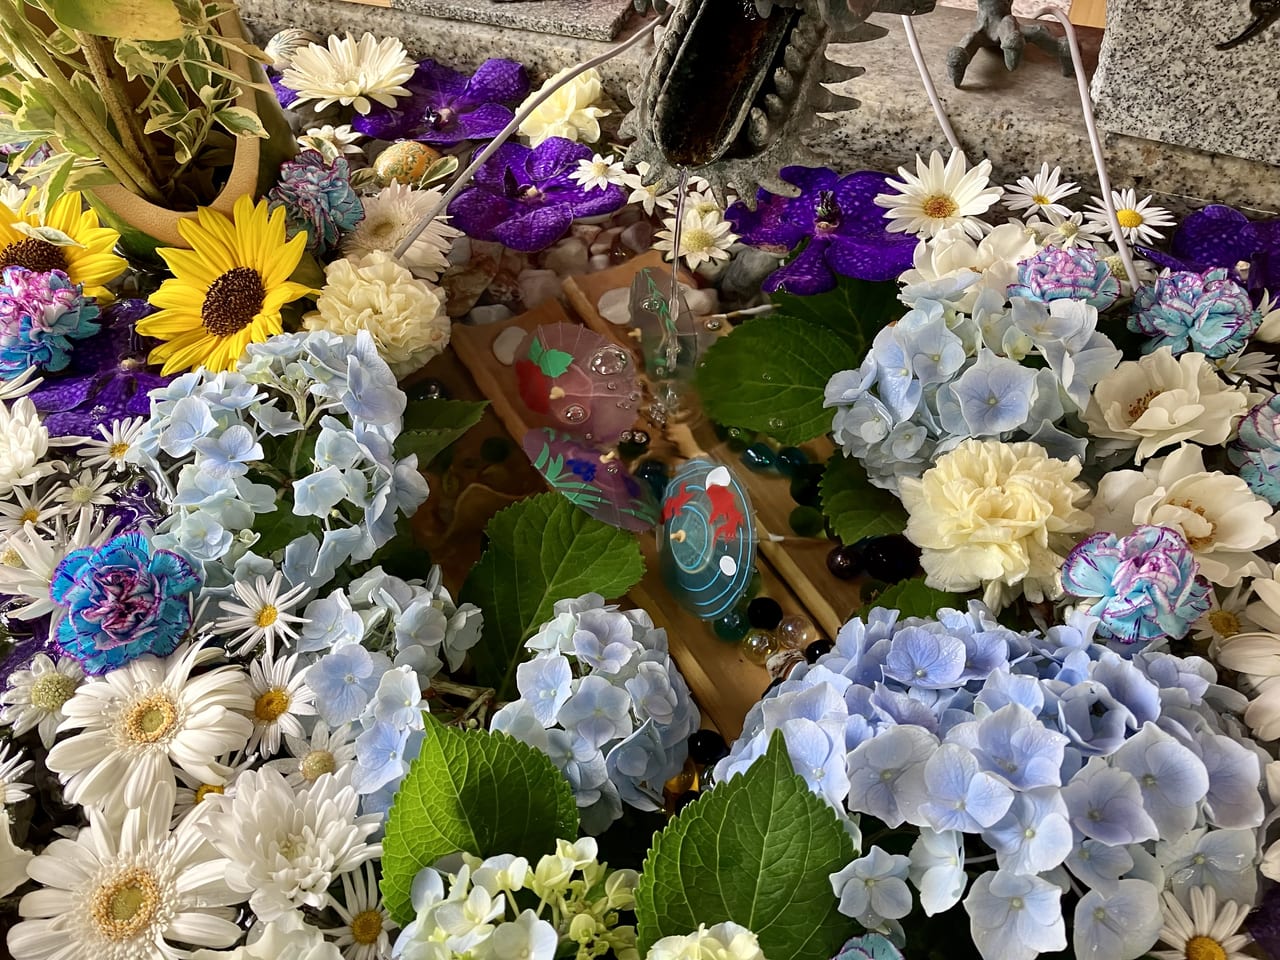 花手水が人気の『札幌諏訪神社』☆種類豊富なおみくじもありました！アマビエ様もそっと見守っています